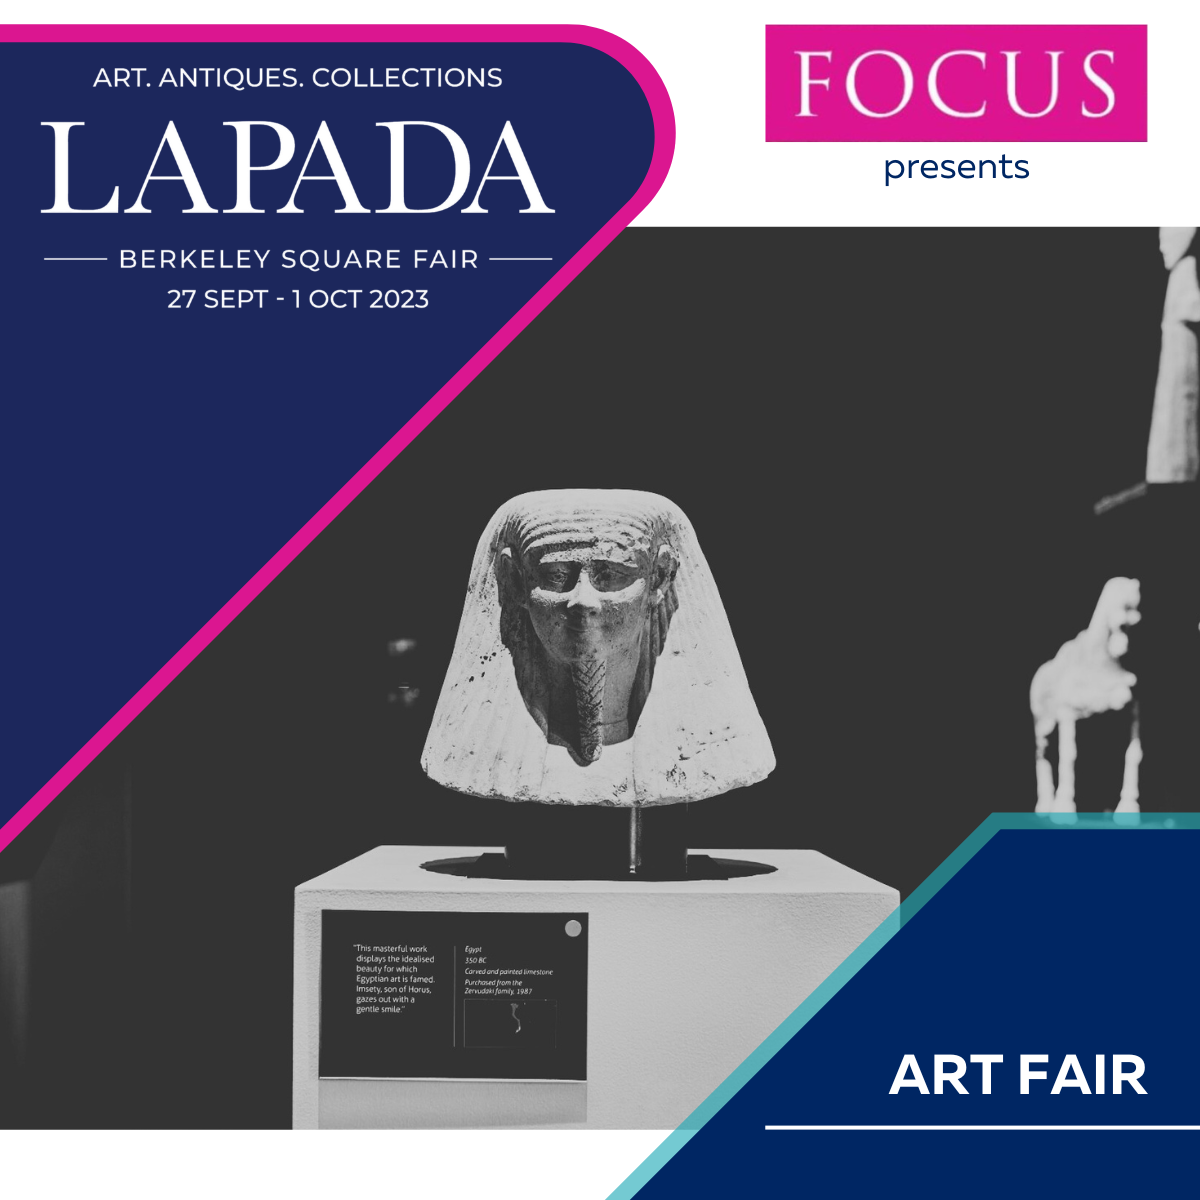 LAPADA art and antique fair